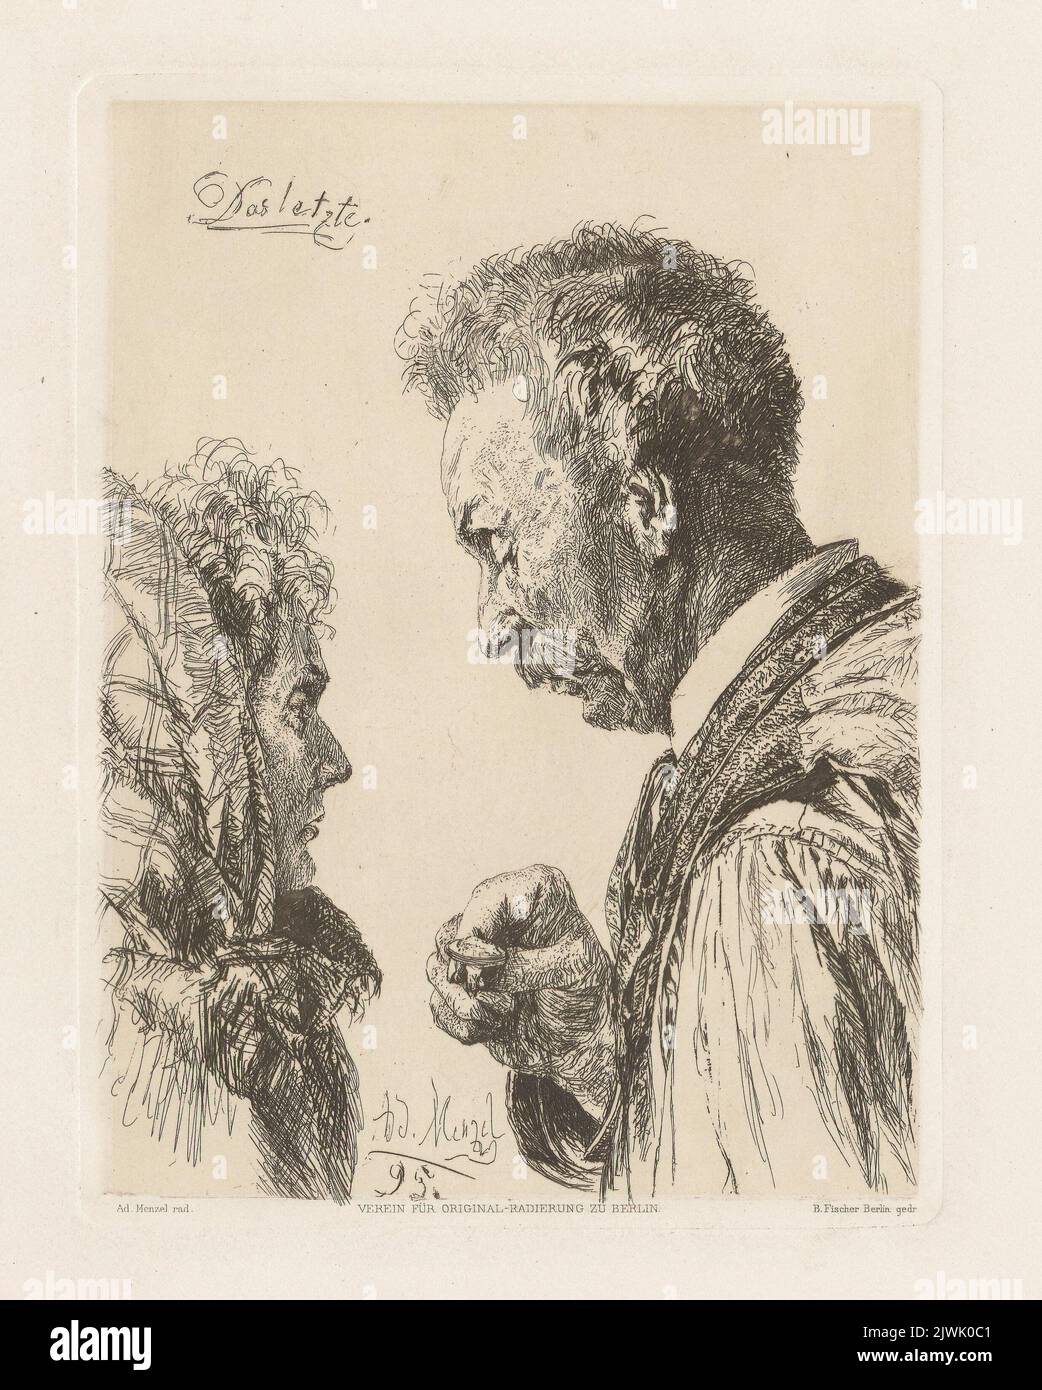 Stary mężczyzna pokazuje kobiecie pierścień z kameą. Menzel, Adolph (1815-1905), graphic artist Stock Photo